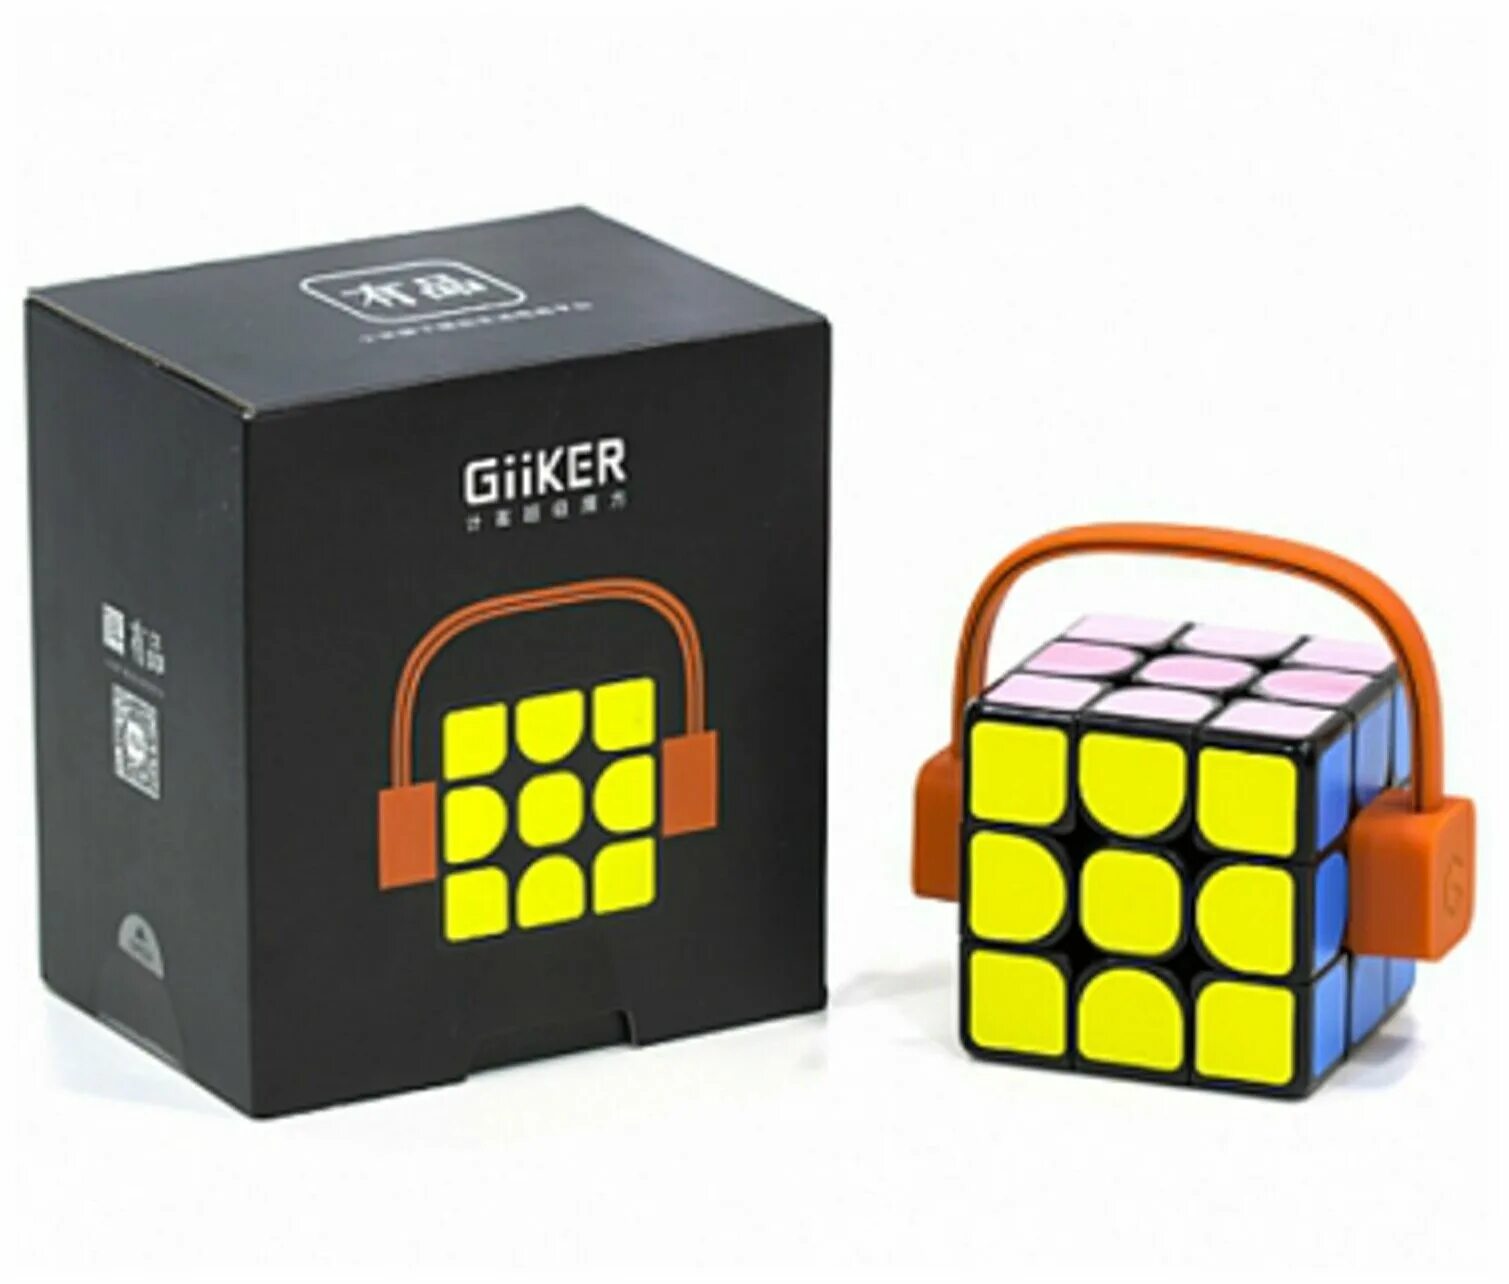 Головоломка giiker. Кубик Рубика Xiaomi SUPERCUBE i3 giikep. Кубик Рубика Giiker super Cube i3. Головоломка Xiaomi 3x3x3 Giiker super Cube i3 черный/оранжевый. Кубик рубик Xiaomi Giiker super Cube.